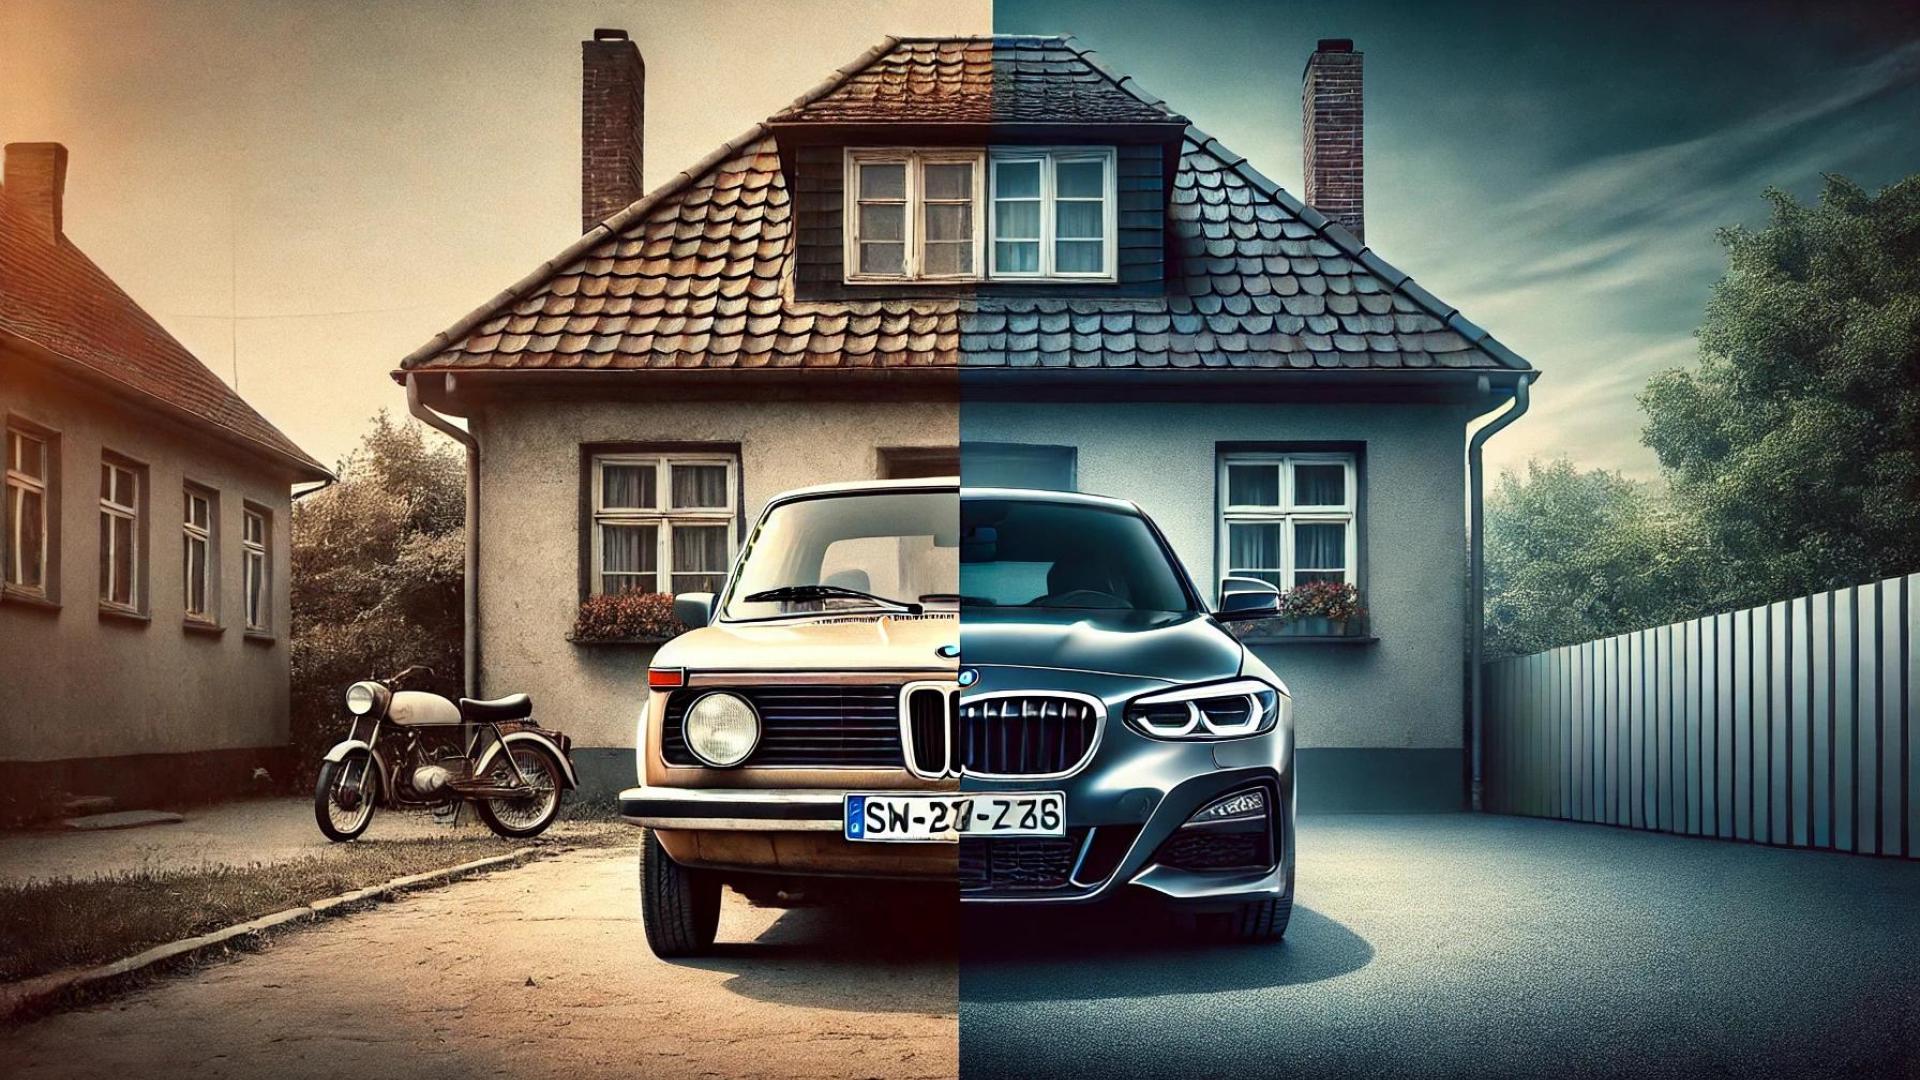 Geteiltes Bild: links steht ein BMW 1er aus den 1980er Jahren und rechts ein modernes Modell aus der heutigen Zeit